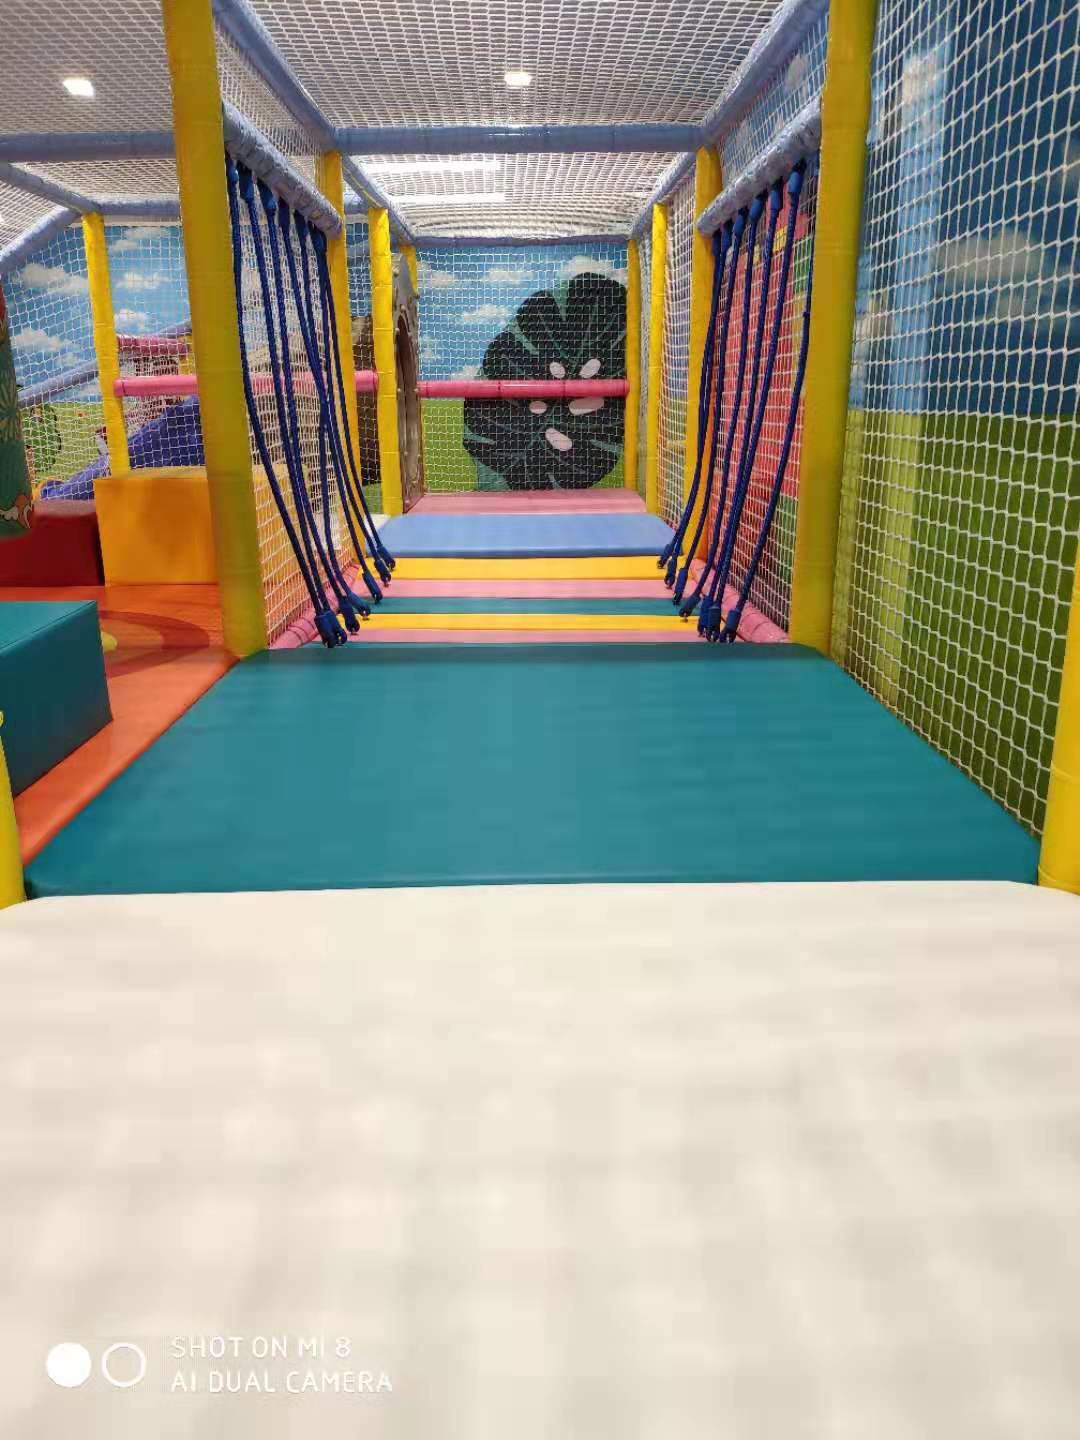 Espaço com tema de playground interior macio